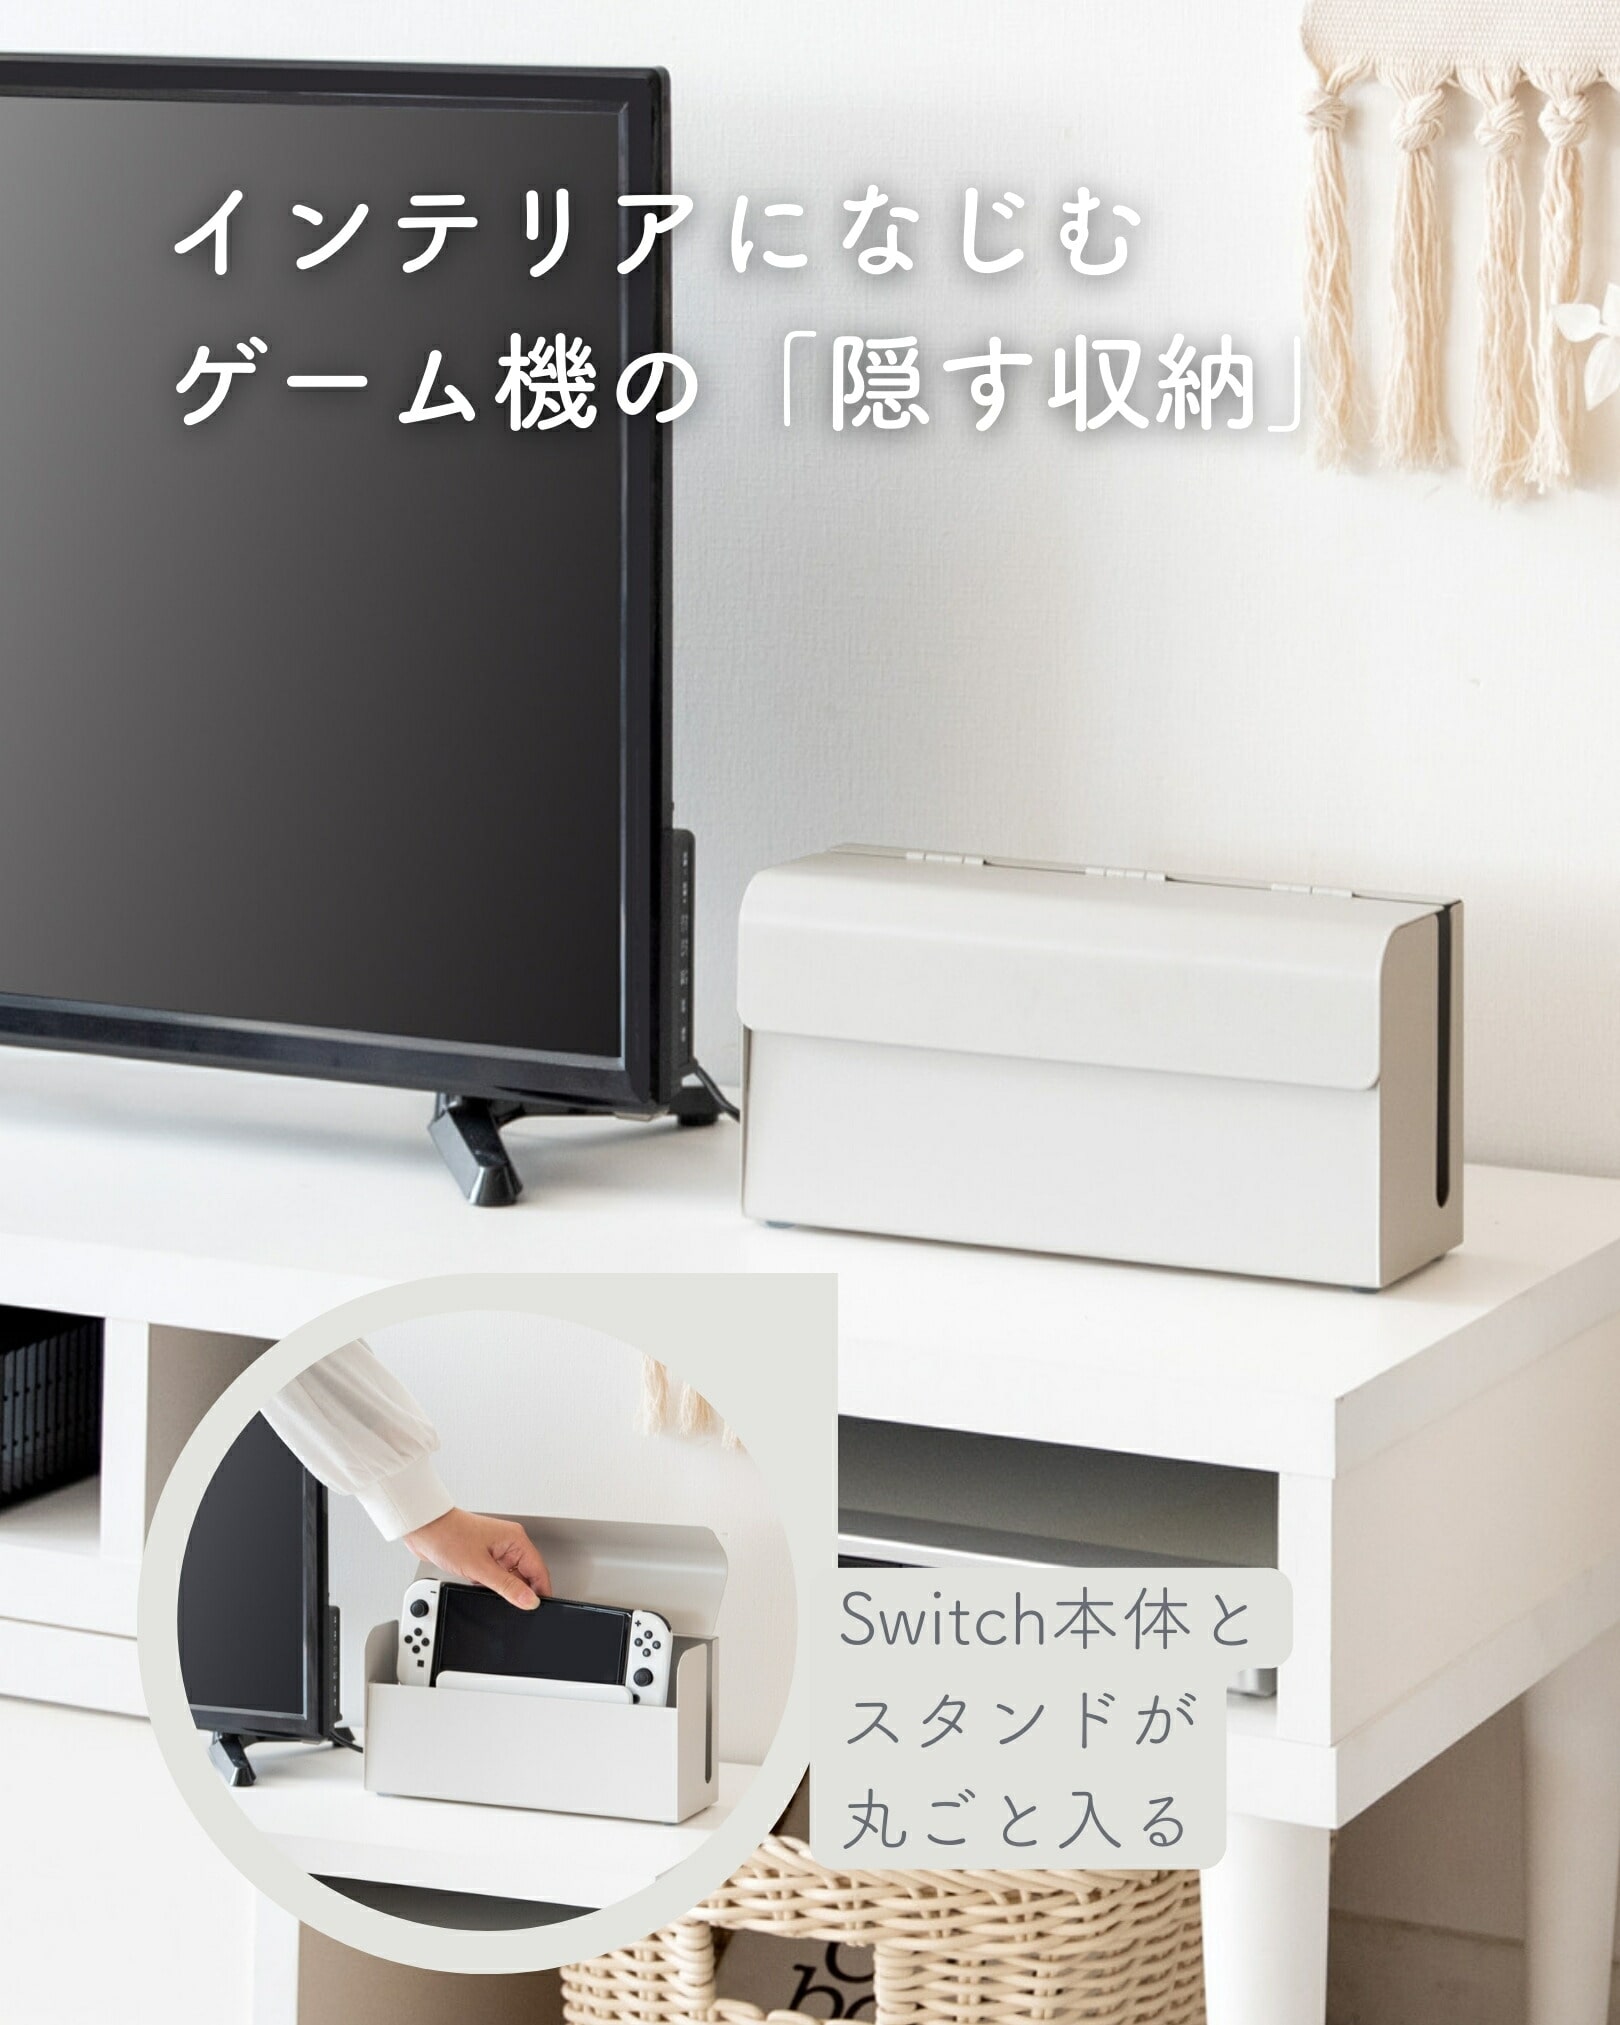 Nintendo Switch用 収納ケース 幅28 奥行9 高さ14cm 宮武製作所